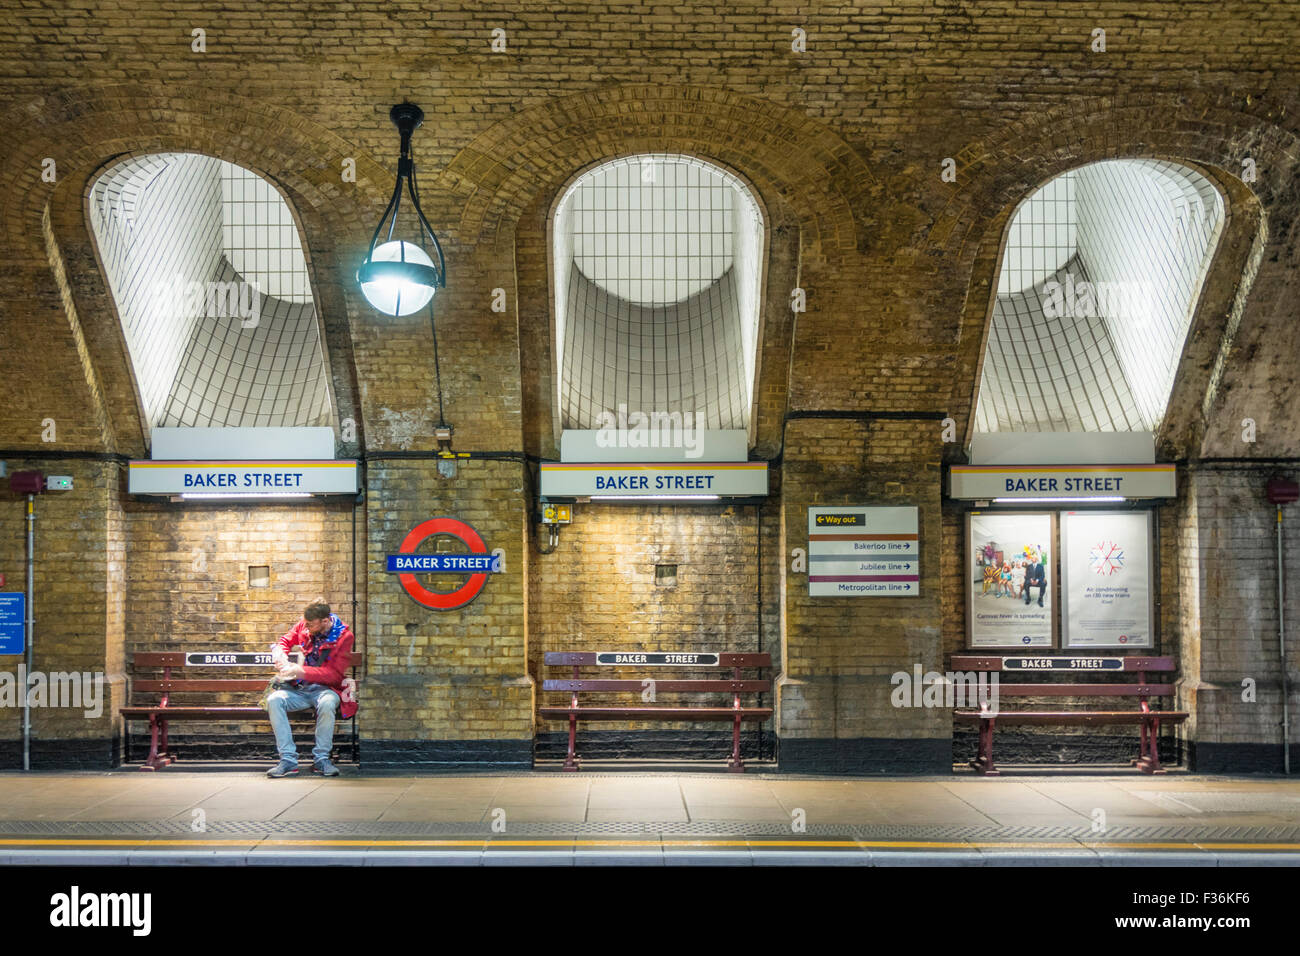 Homme en attente d'un train de métro à Baker Street station plate-forme Londres Angleterre Royaume-Uni GB Europe Banque D'Images